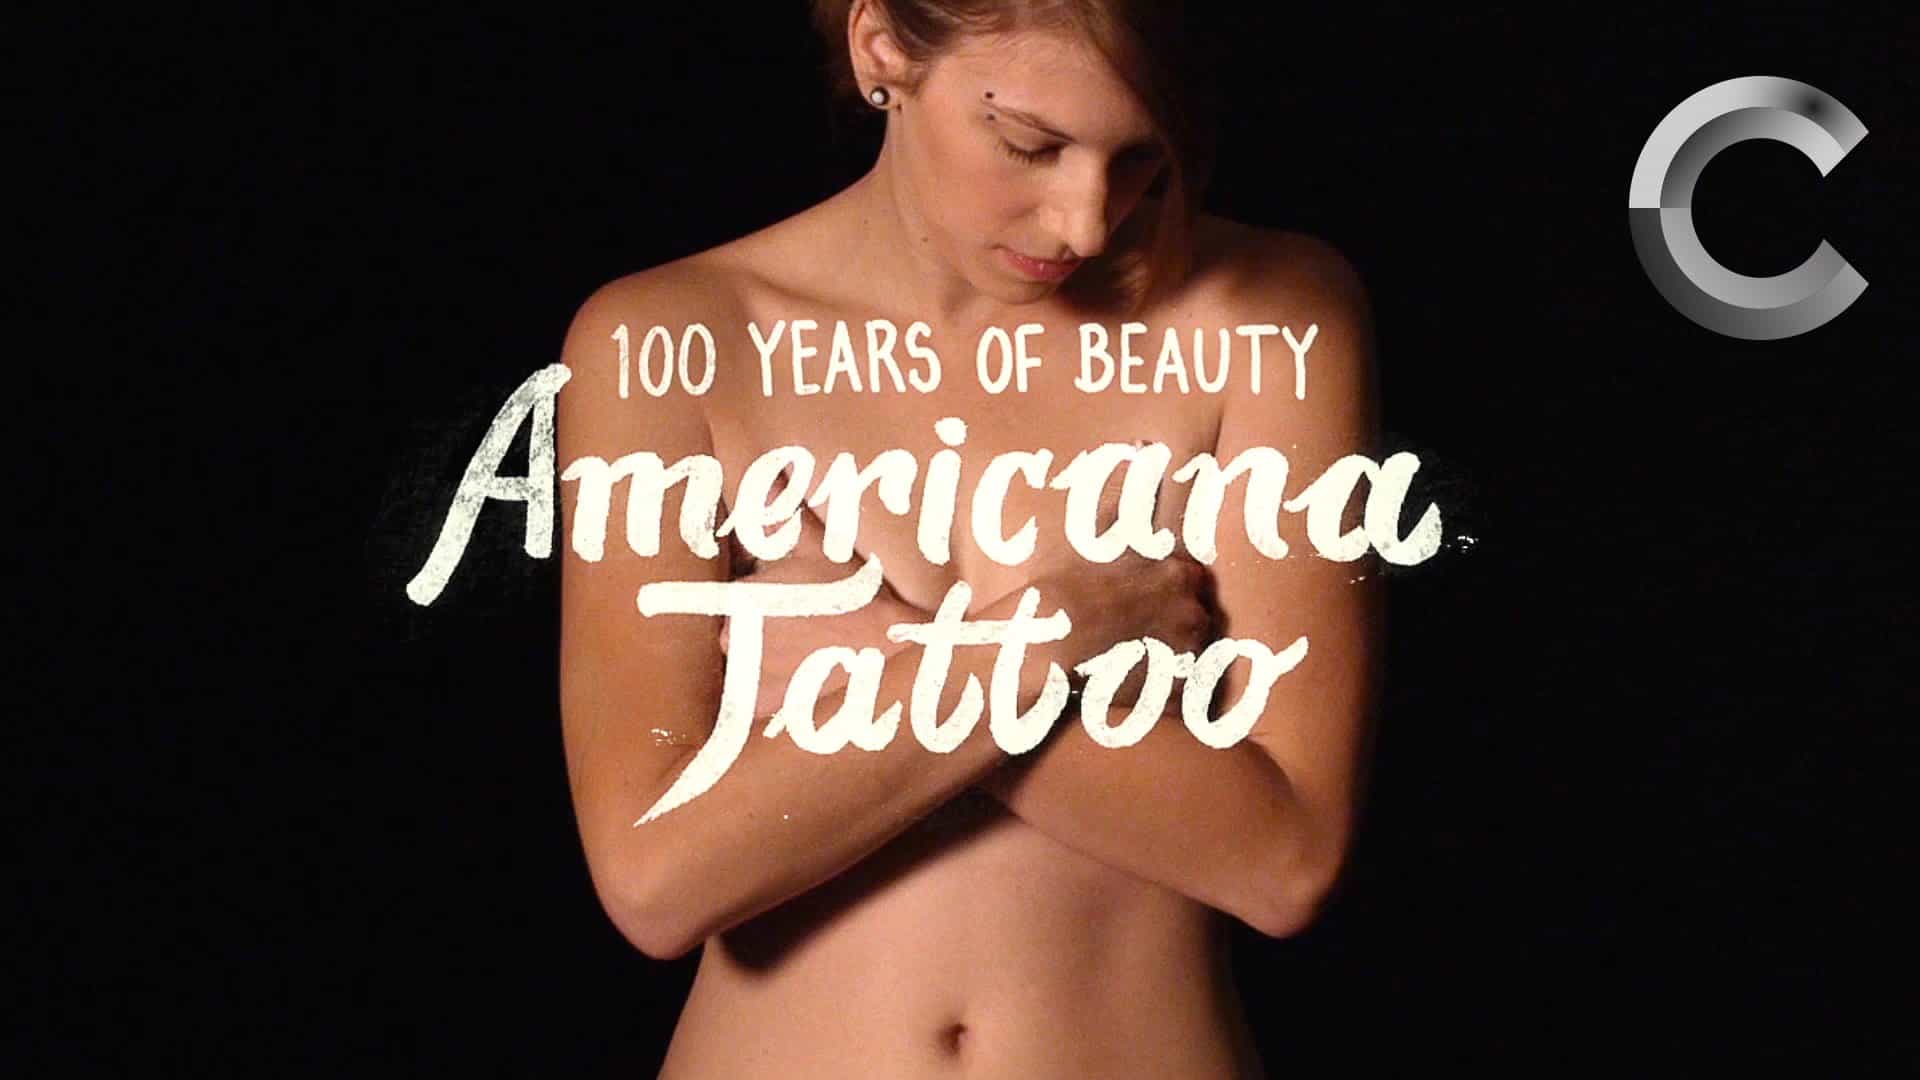 Tatuaggi nello stile degli ultimi 100 anni